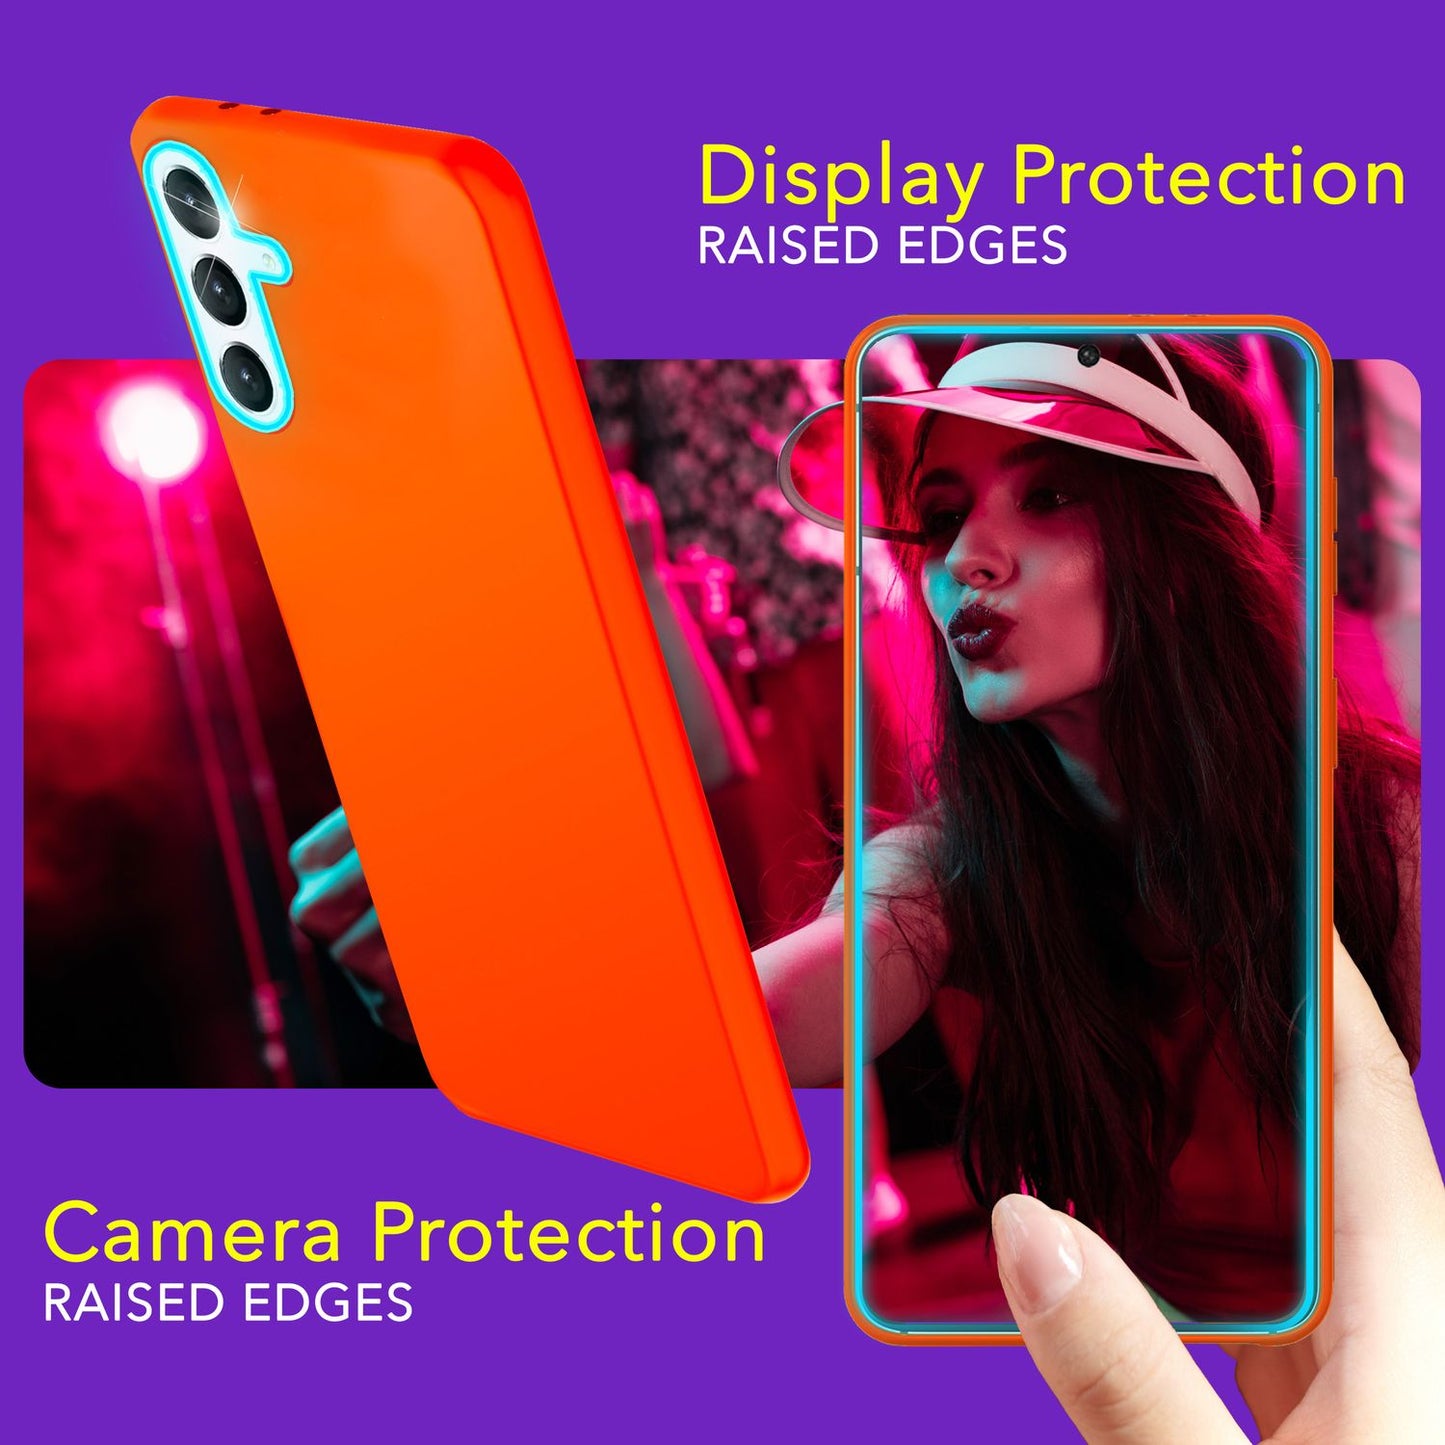 NALIA Farbintensive Neon Silikonhülle für Samsung Galaxy S24 Plus Hülle, Dünne Schutzhülle in Bunt Leuchtender Neonfarbe